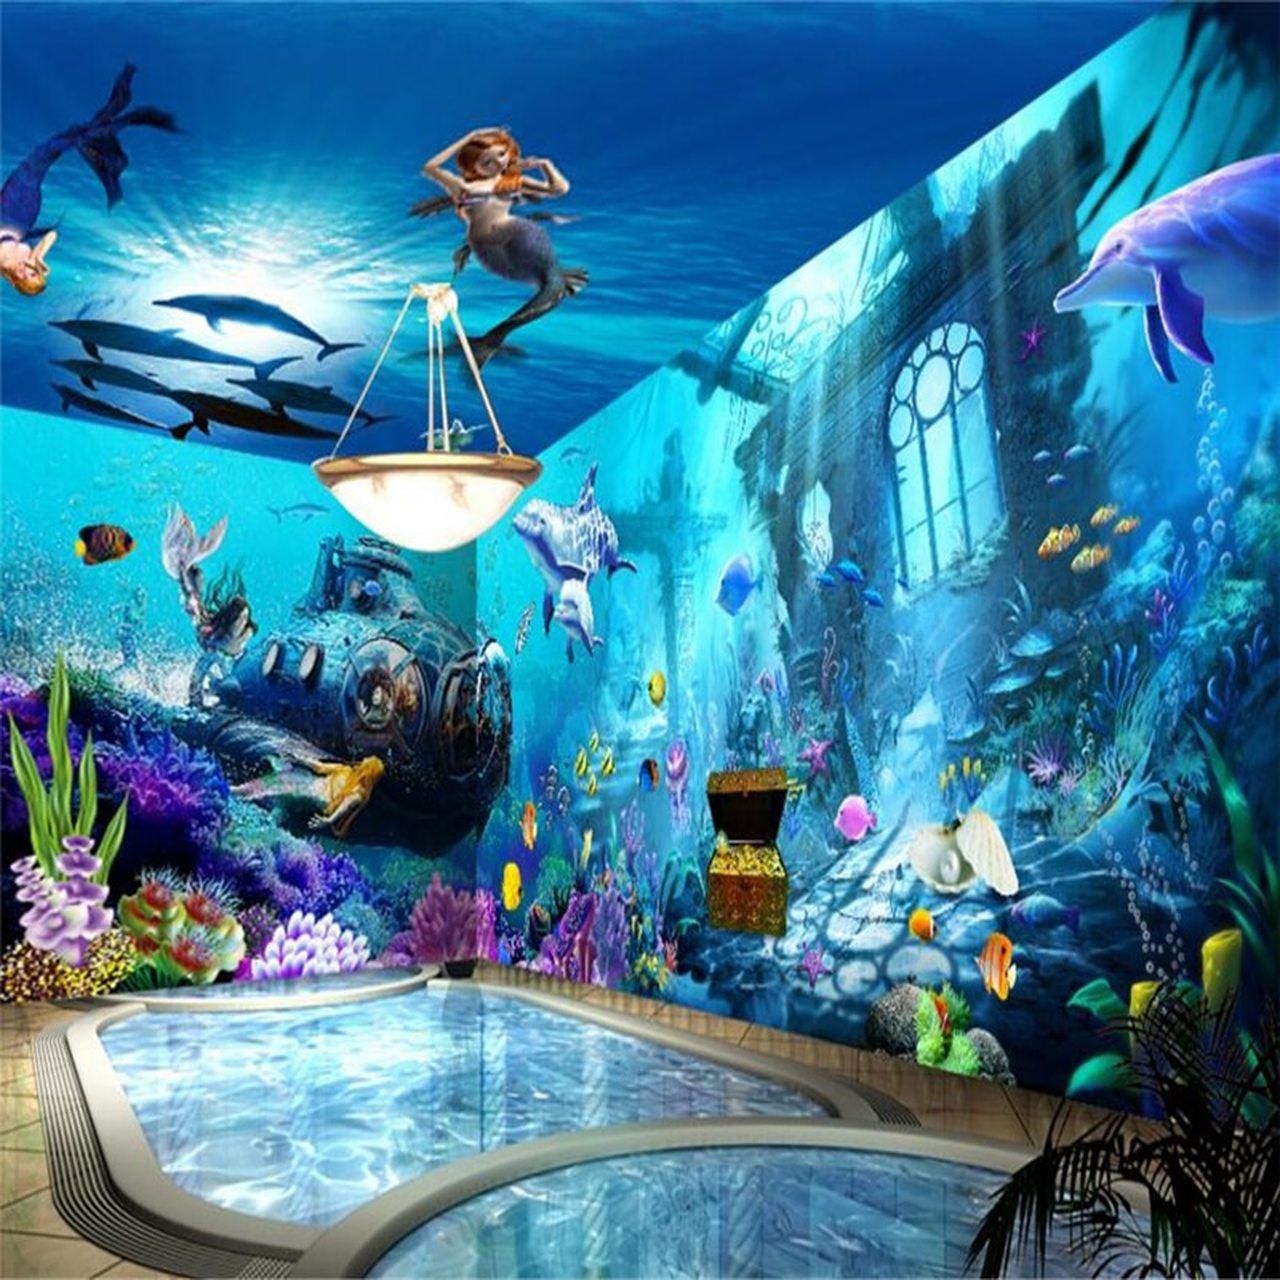 mermaid wallpaper,aquarium,marine biology,underwater,leisure,ocean